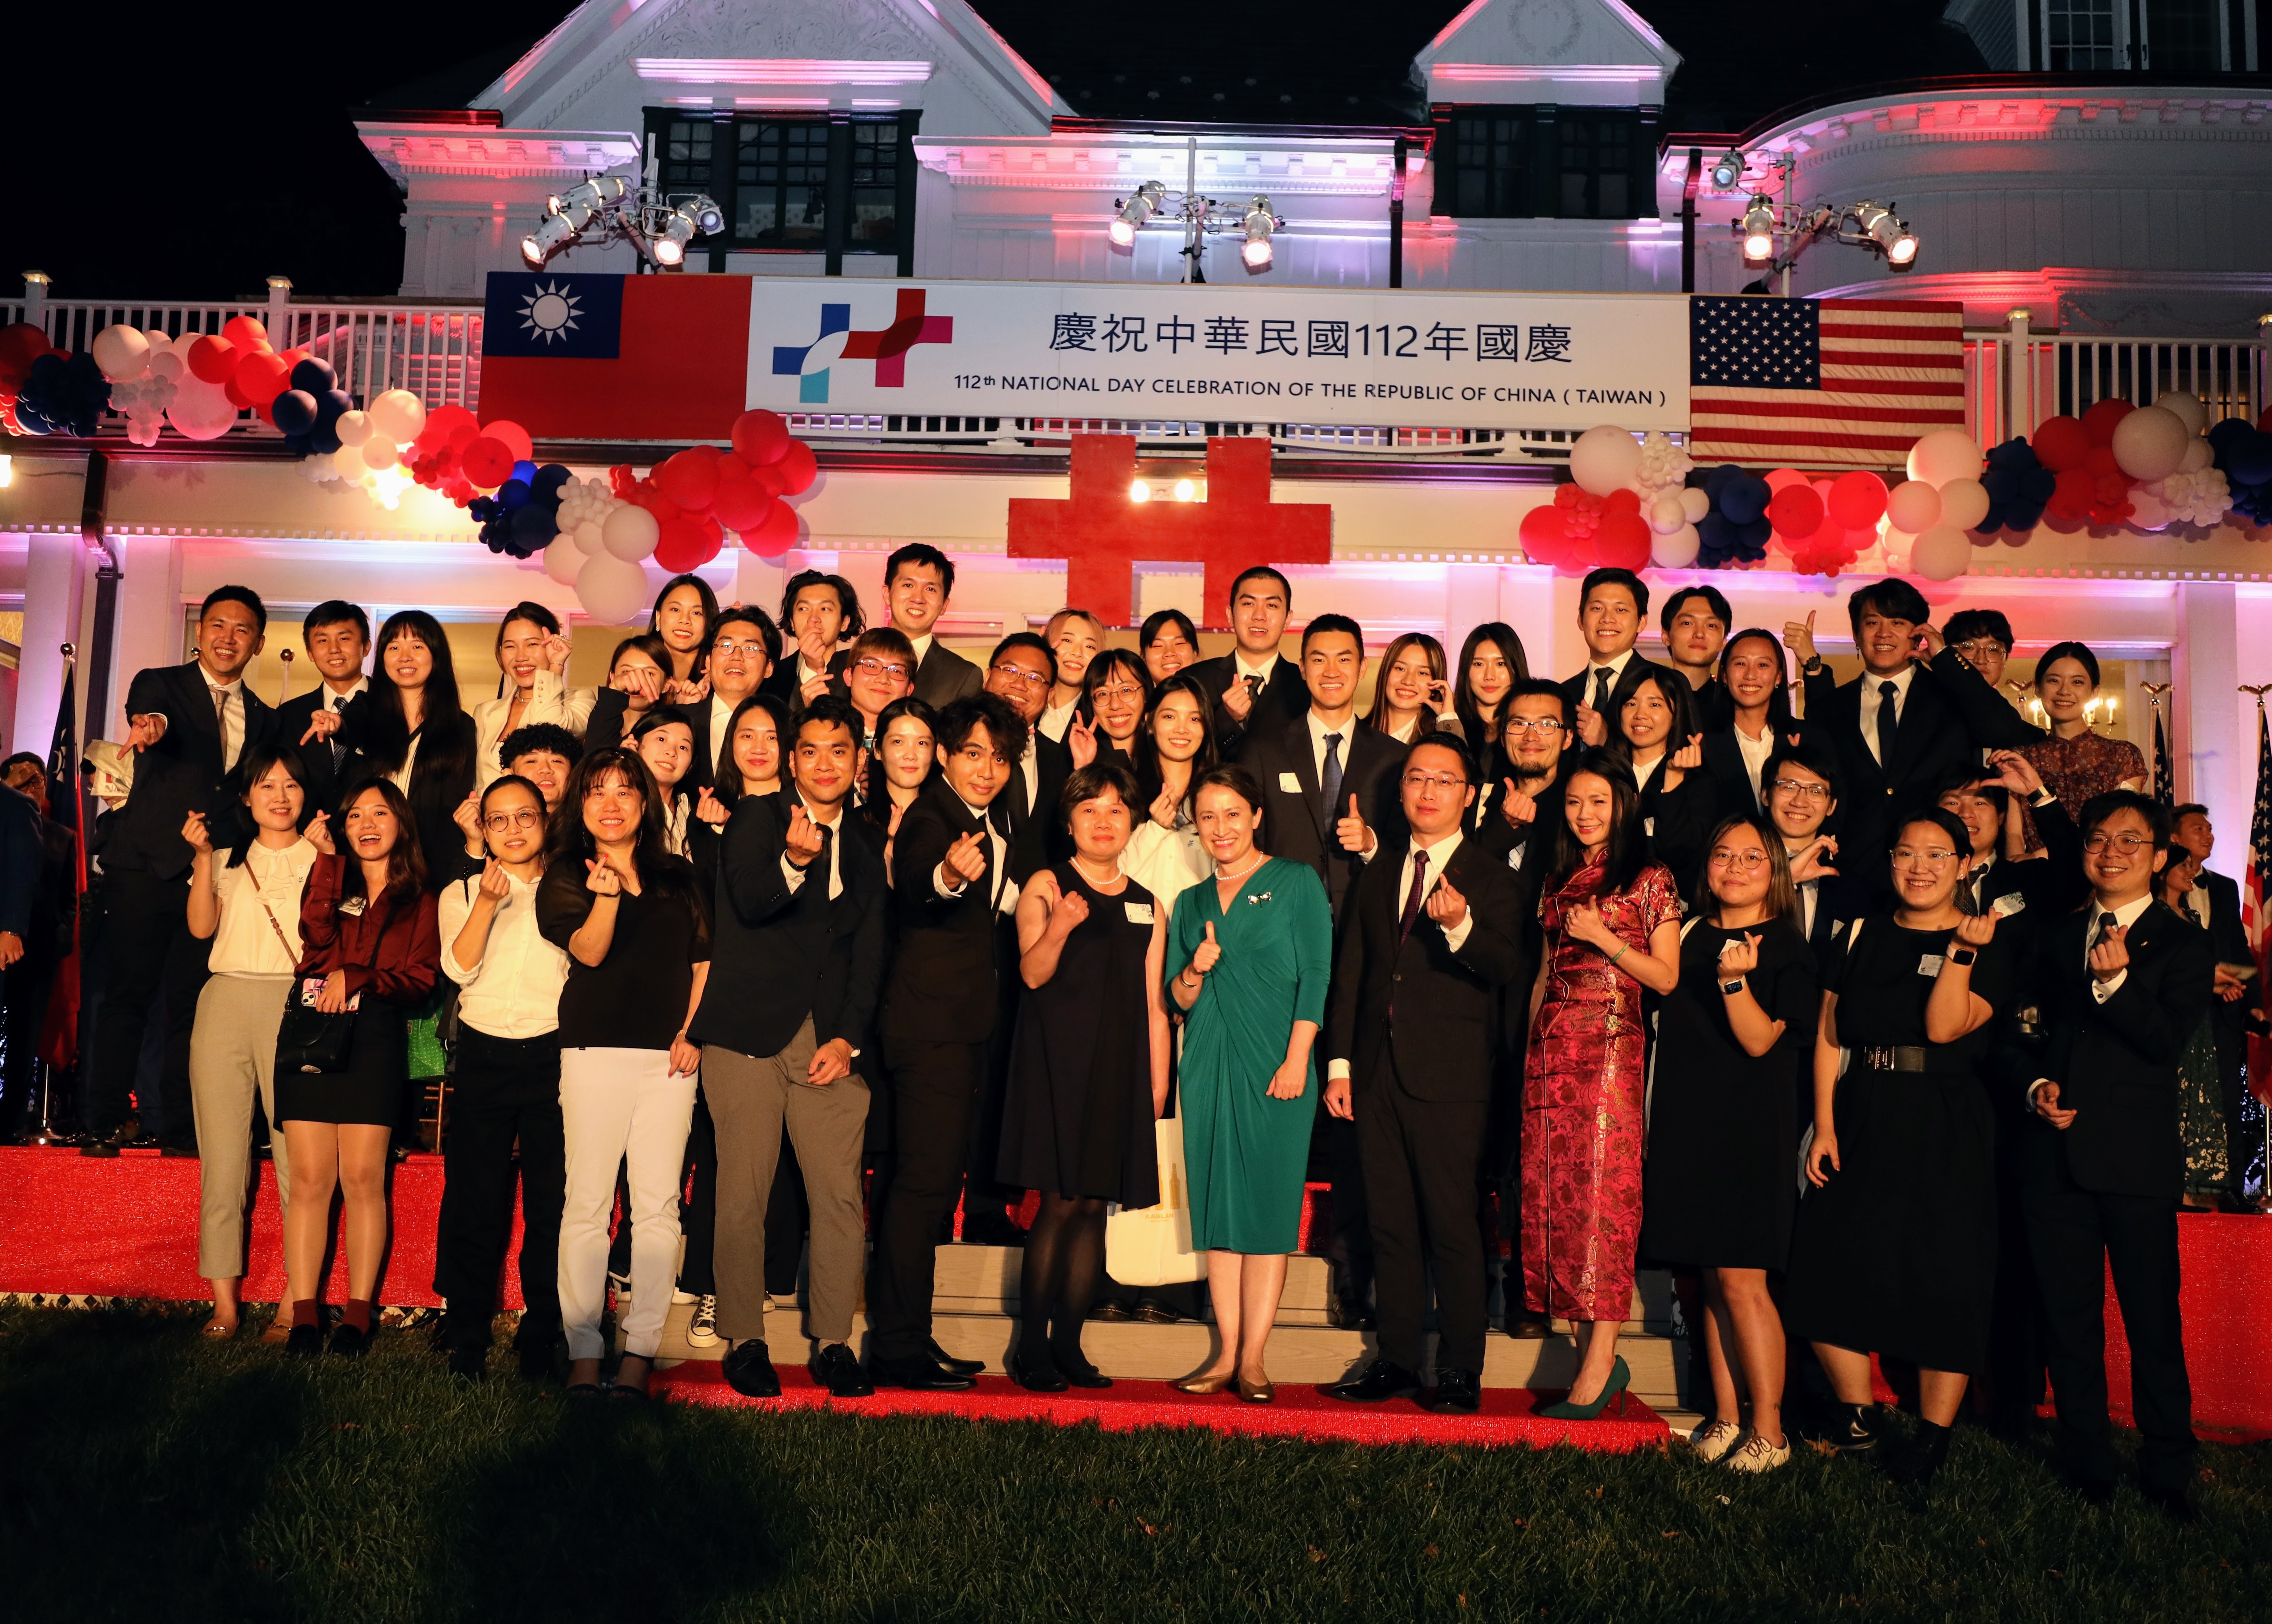 45名大華府地區台灣留學生於雙橡園國慶酒會擔任親善志工會後與蕭大使合影